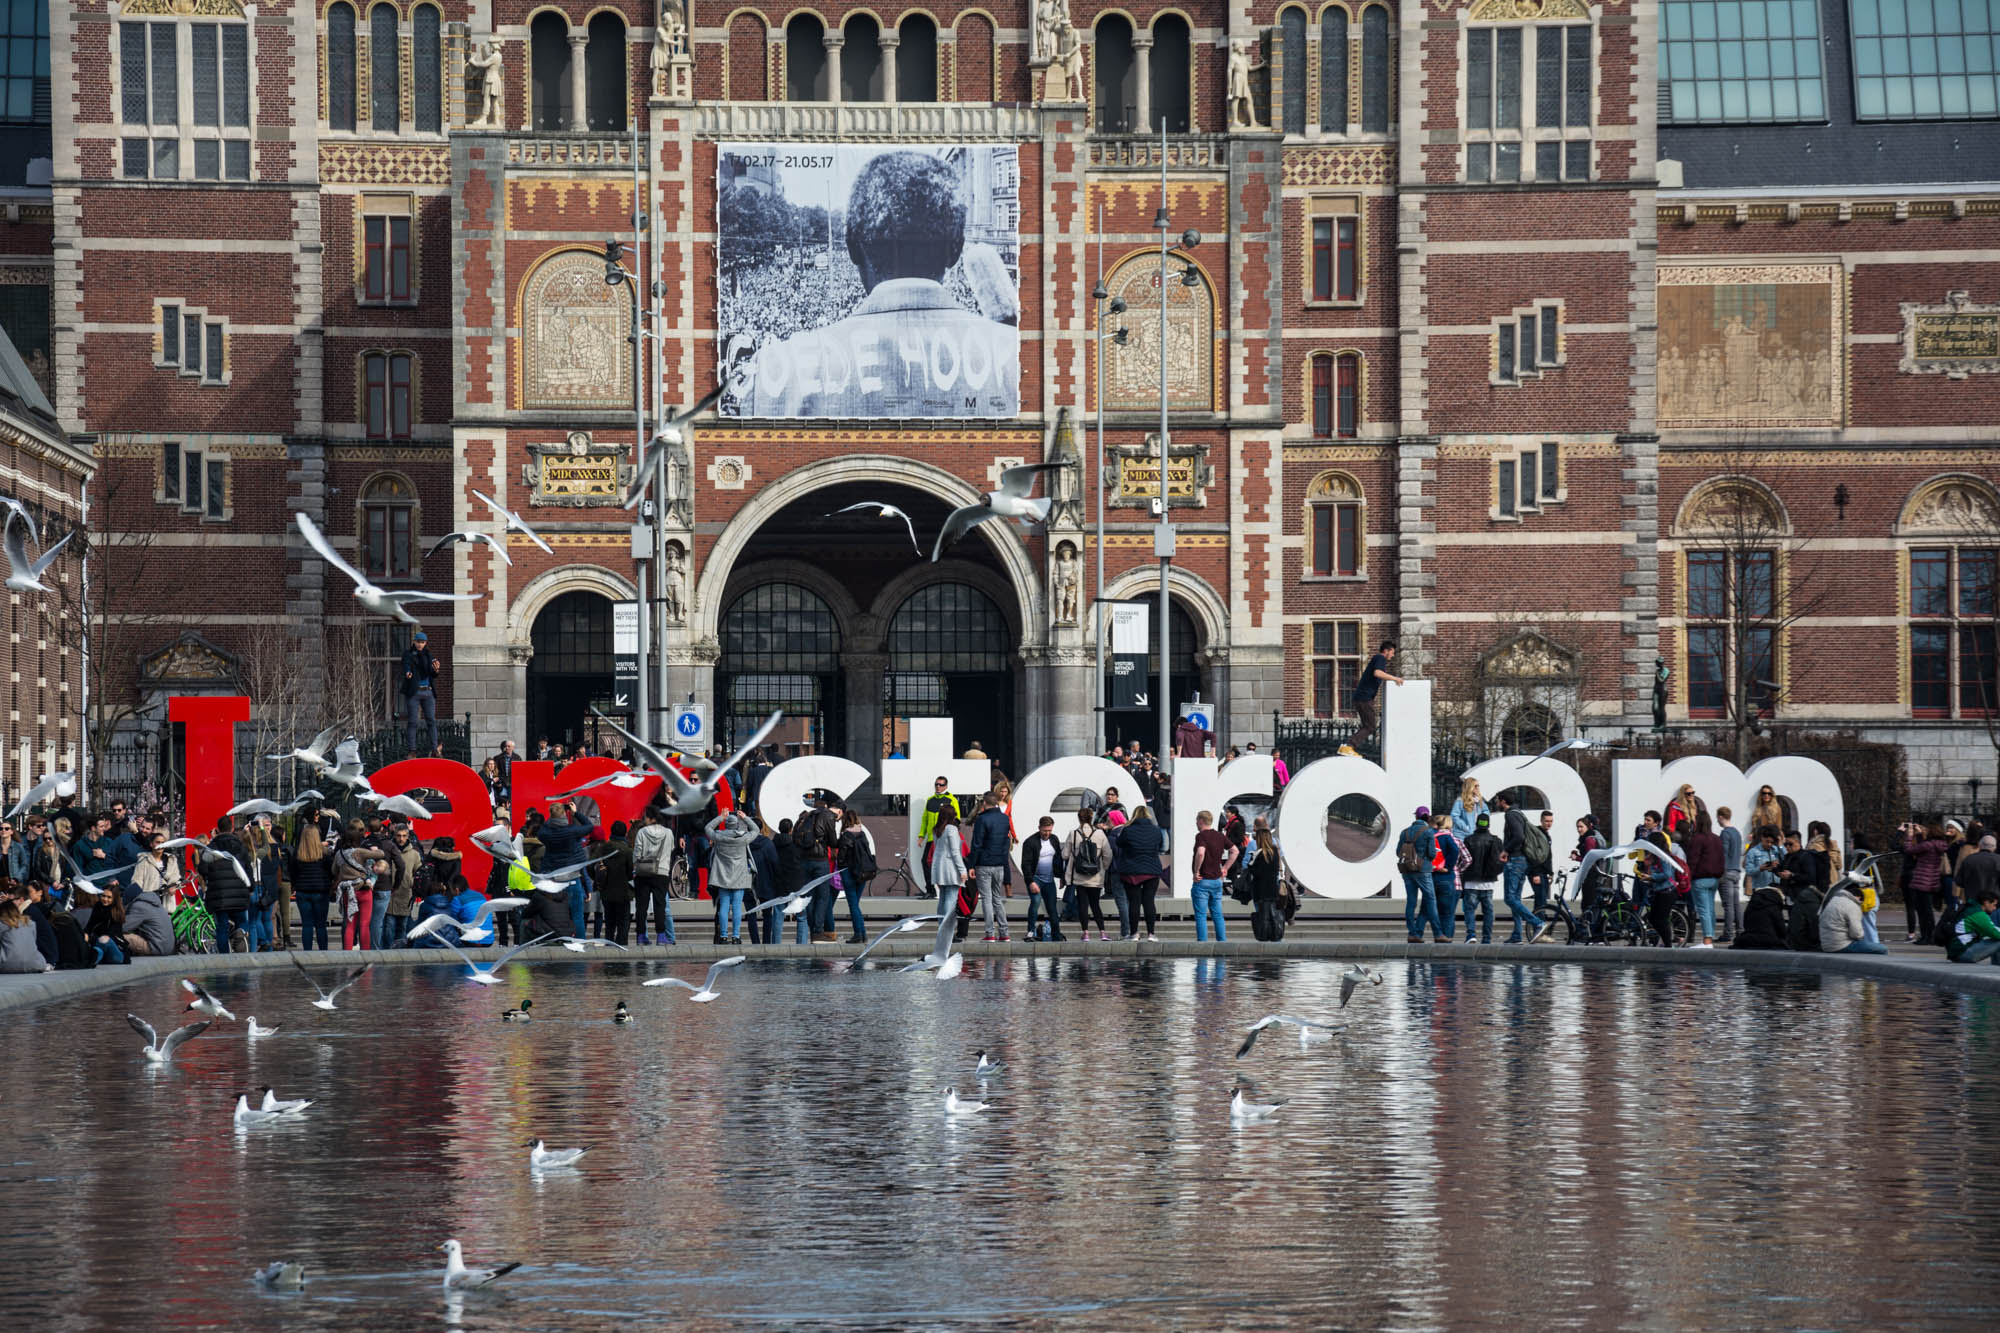 Как сэкономить в Амстердаме на транспорте и музеях?